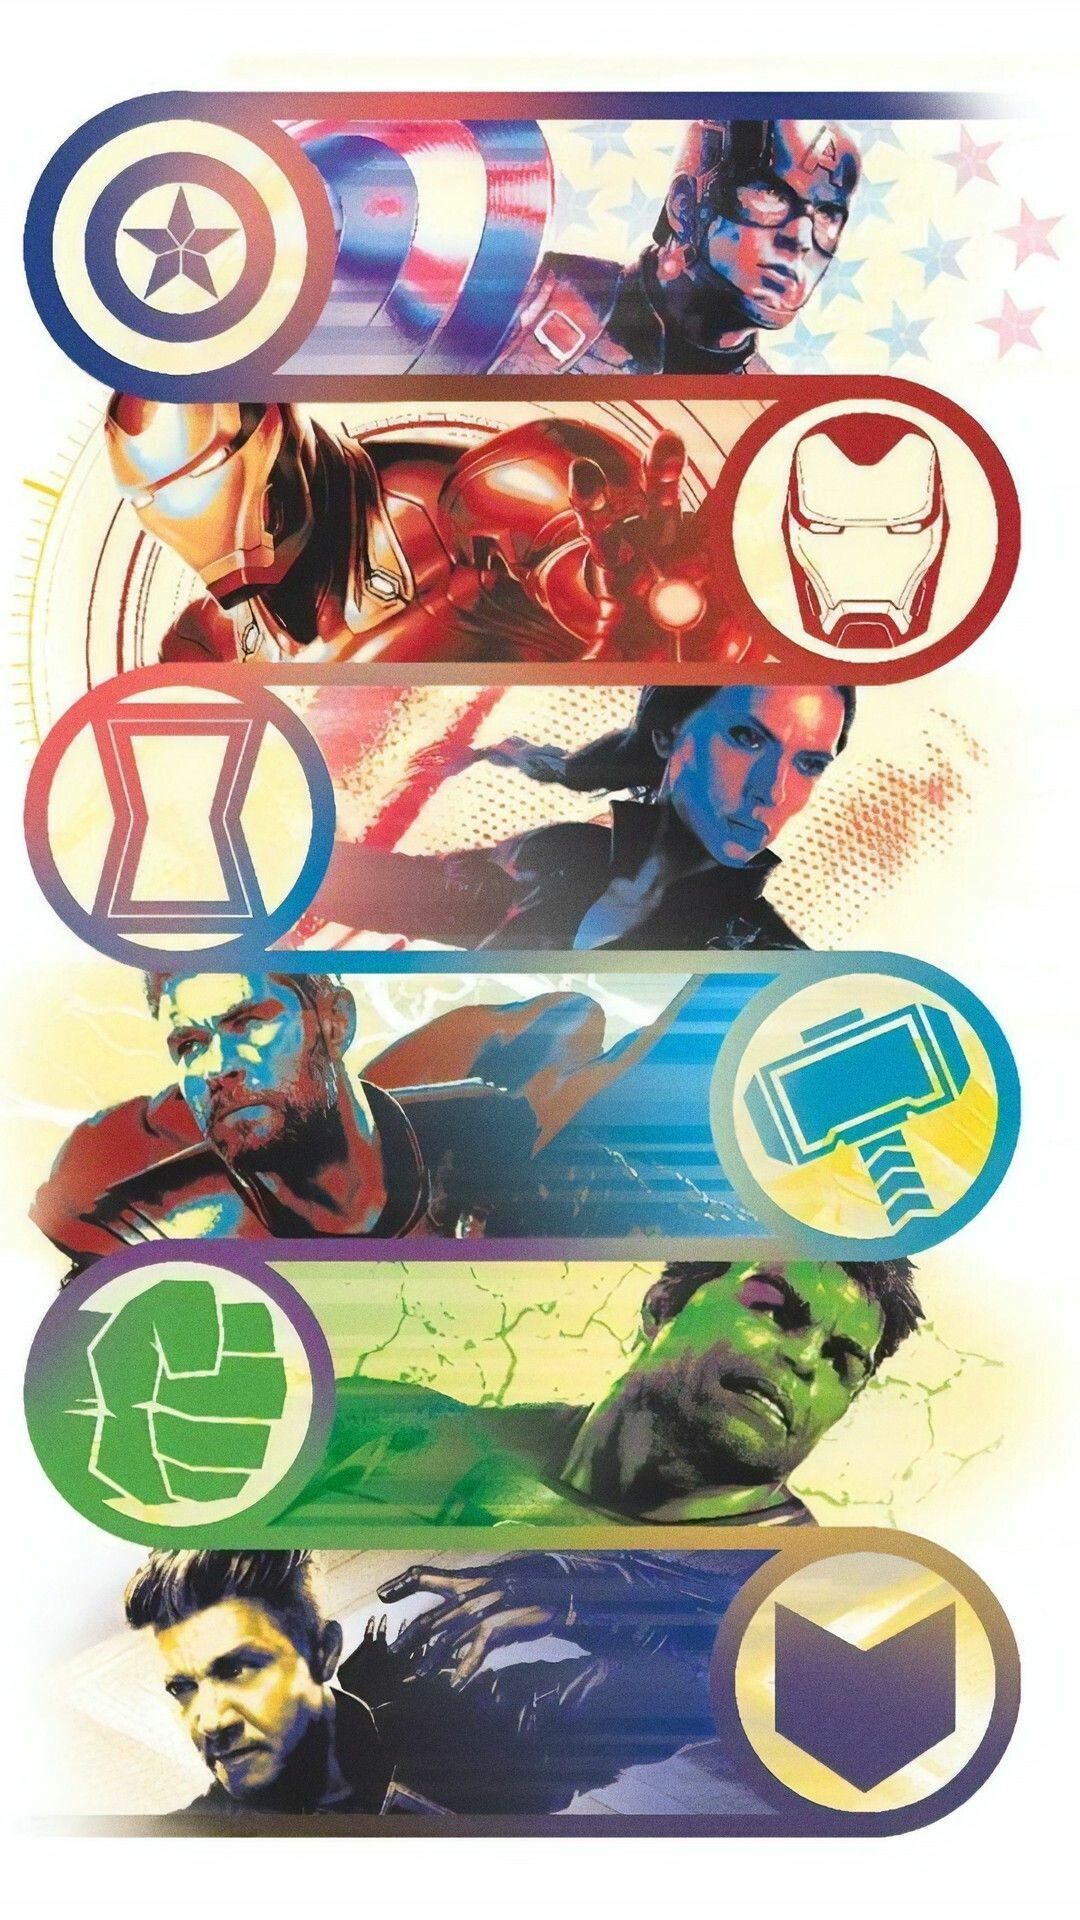 Avengers: Endgame, Marvel superheroes, Poster. 1080x1920 Full HD Background.